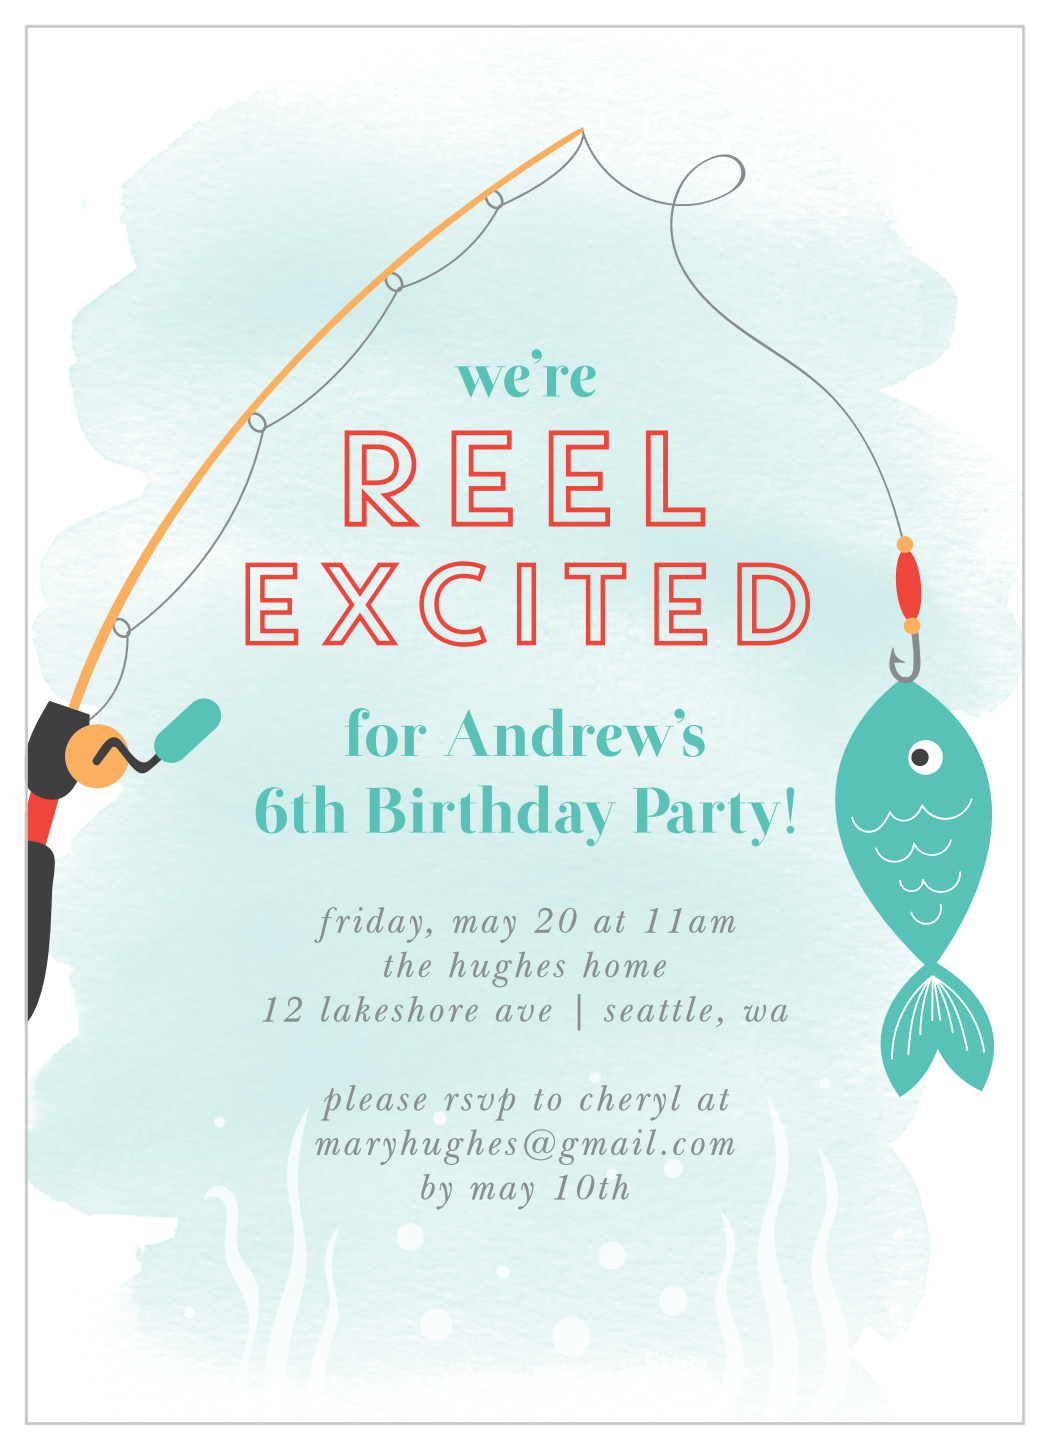 Gone Fishing Children's Birthday Invitations by Basic Invite